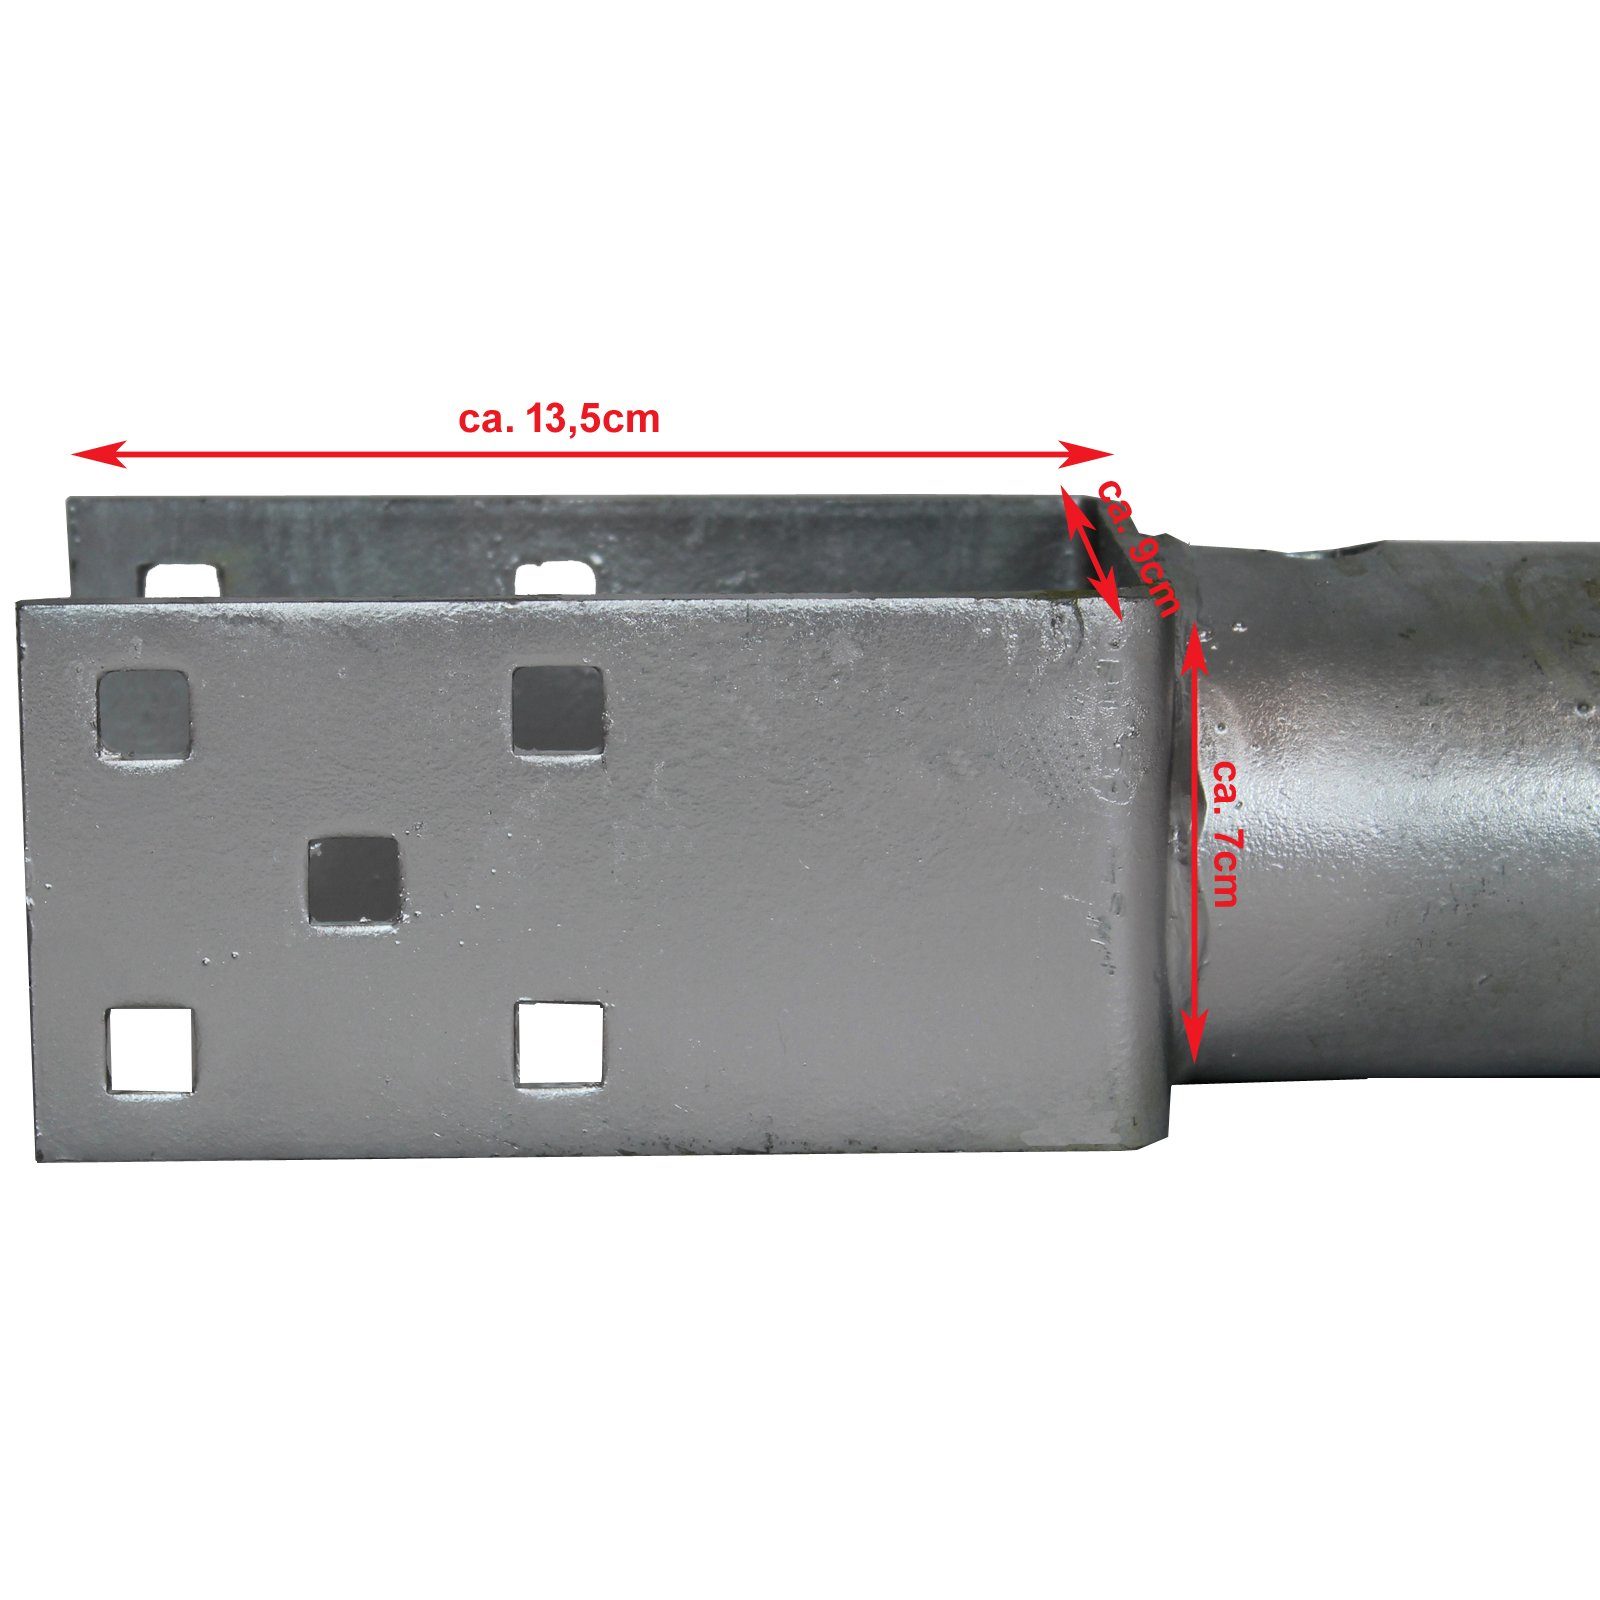 Einschraub-Bodenhülse (LxBxH): Eindrehen, Abmessungen Abmessungen für ca. 7x9x13,5cm, Boden Einschraubhülse 685mm / 1-St) bis - ca. 55x7x7cm TRUTZHOLM (HxBxT): L der feuerverzinkt zum Lasche U-Profil Lasche 90mm, Spitze (Produkt, Bodenhülse